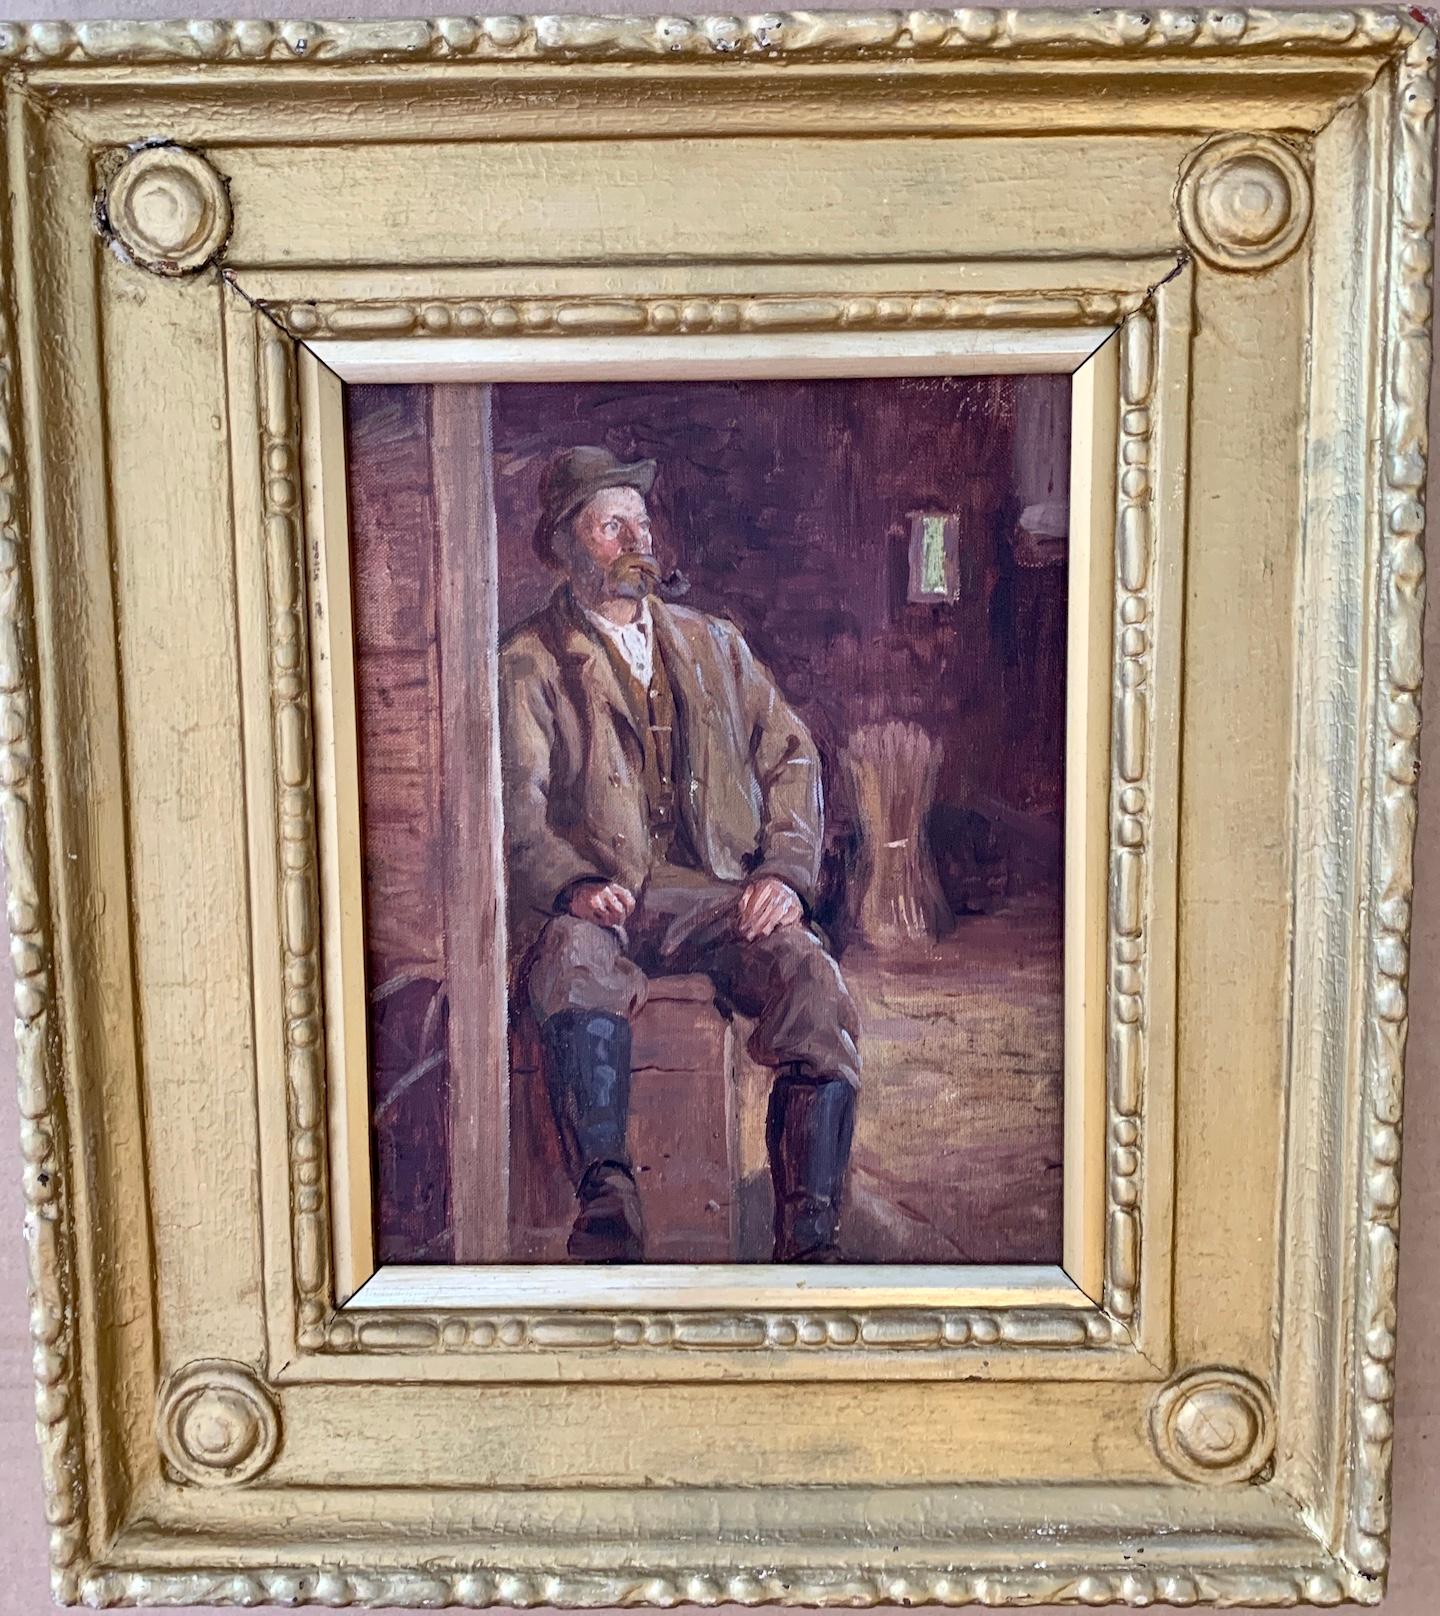 Figurative Painting Irish School - Portrait irlandais du XIXe siècle d'un homme fumant la pipe, assis à l'intérieur d'une grange.